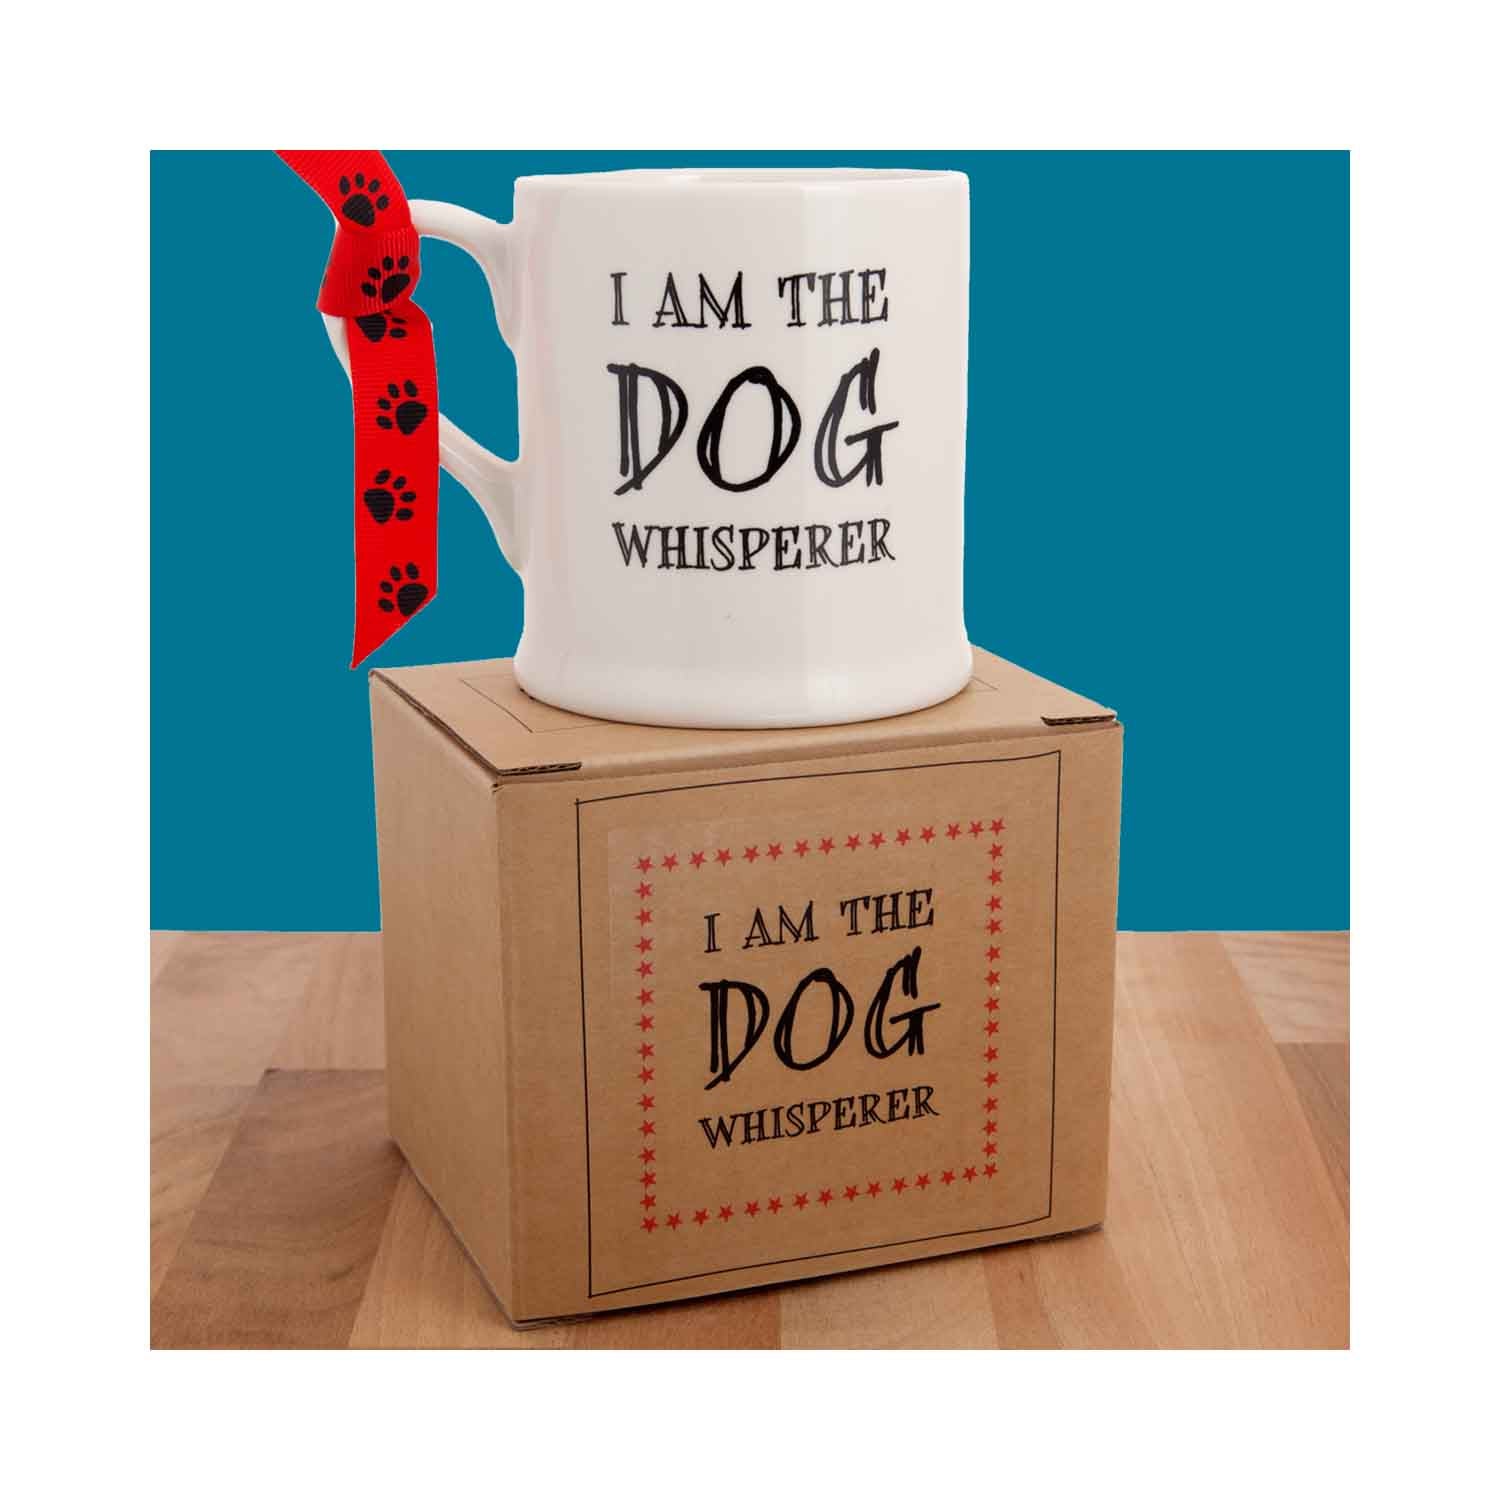 Dog Krazy Gifts - I Am The Dog Whisperer Mug part of the Sweet William range available from DogKrazyGifts.co.uk